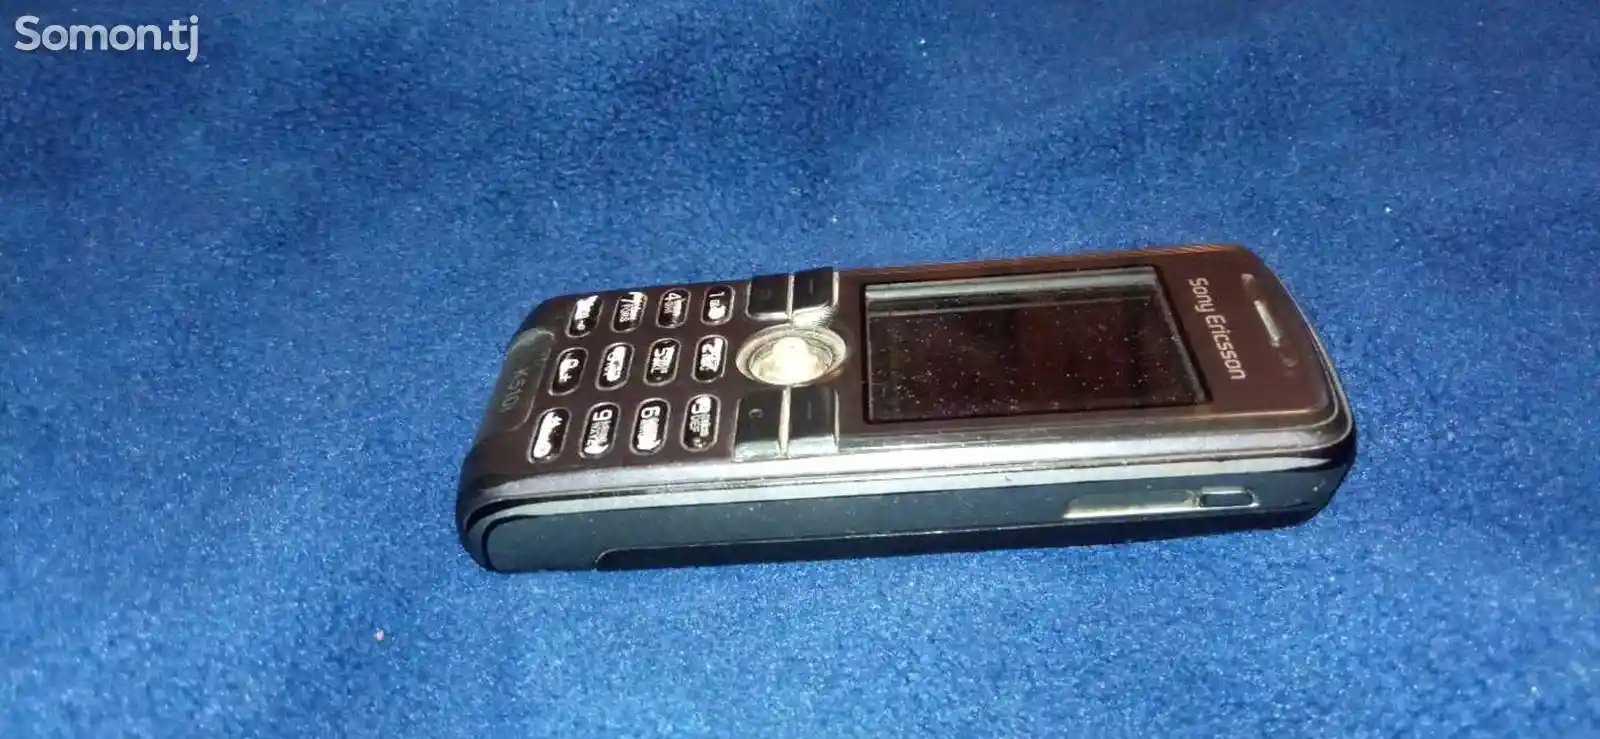 Телефон Sony Ericsson-1